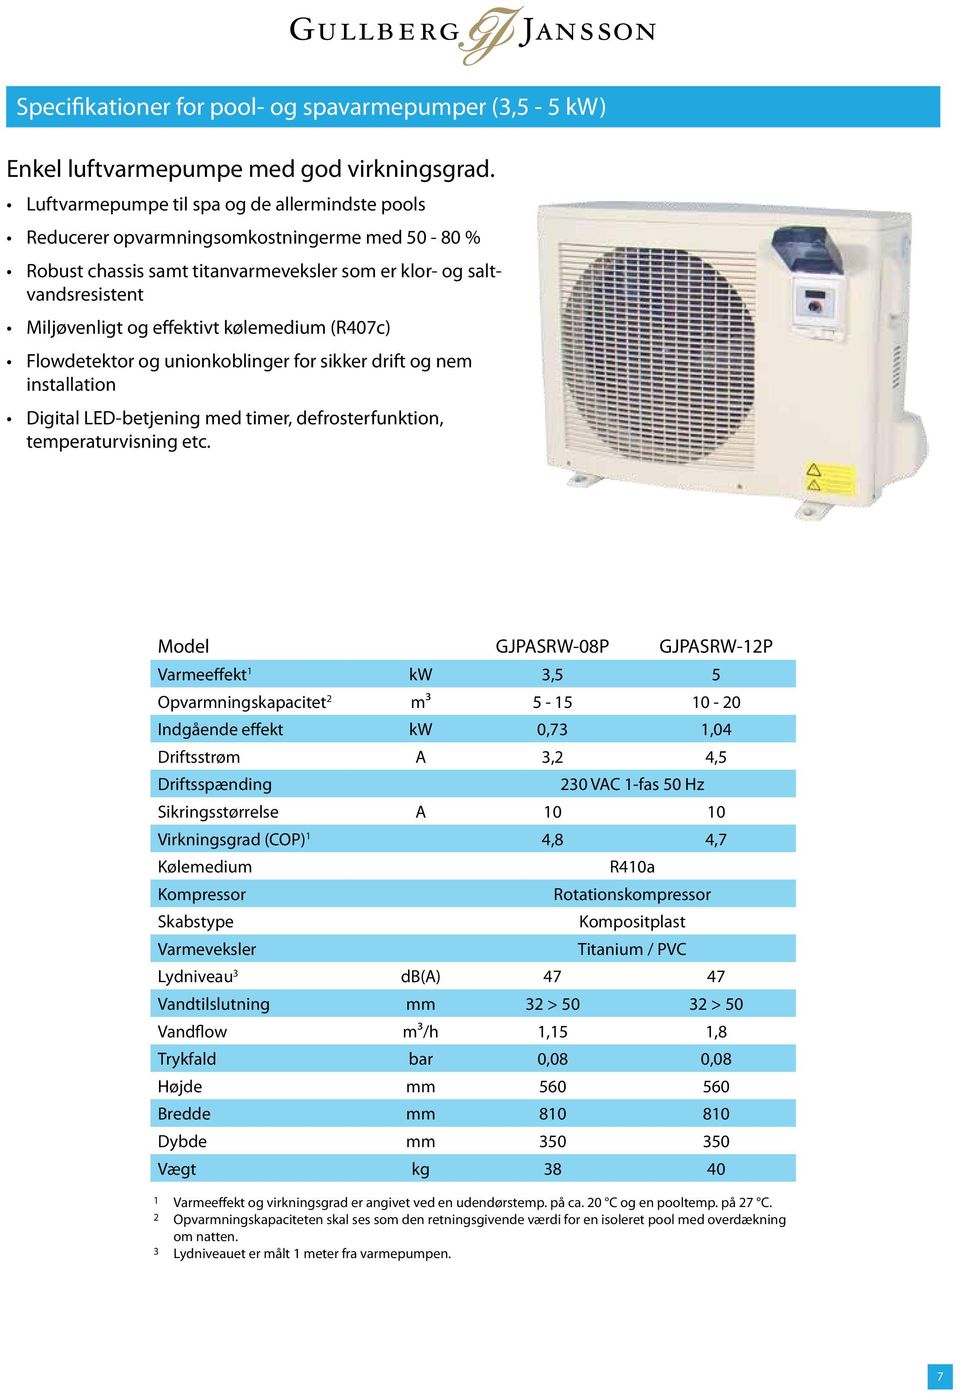 kølemedium (R407c) Flowdetektor og unionkoblinger for sikker drift og nem installation Digital LED-betjening med timer, defrosterfunktion, temperaturvisning etc.